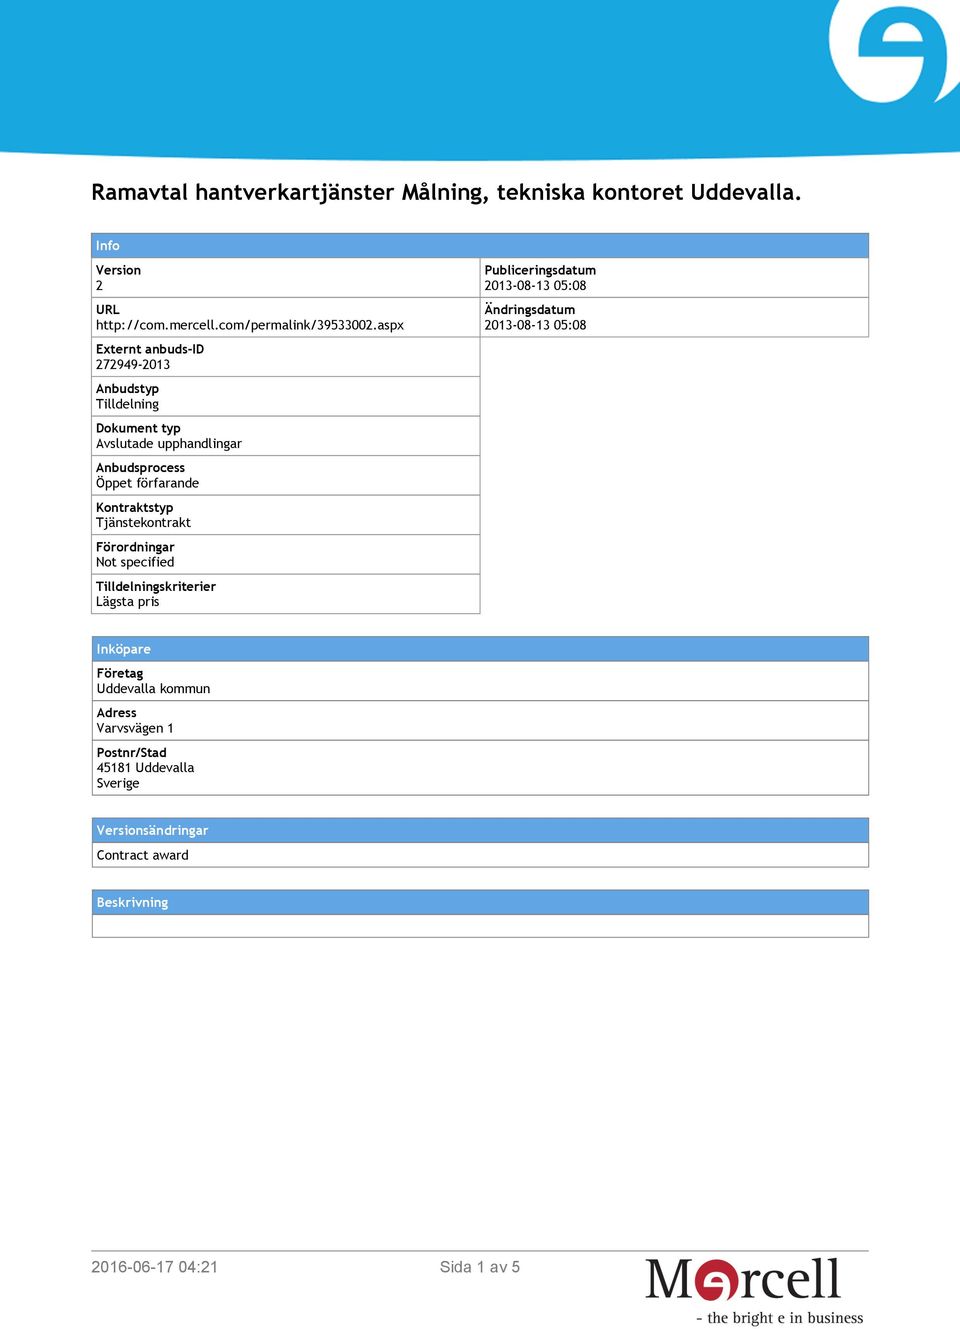 Tjänstekontrakt Förordningar Not specified Tilldelningskriterier Lägsta pris Publiceringsdatum 2013-08-13 05:08 Ändringsdatum 2013-08-13